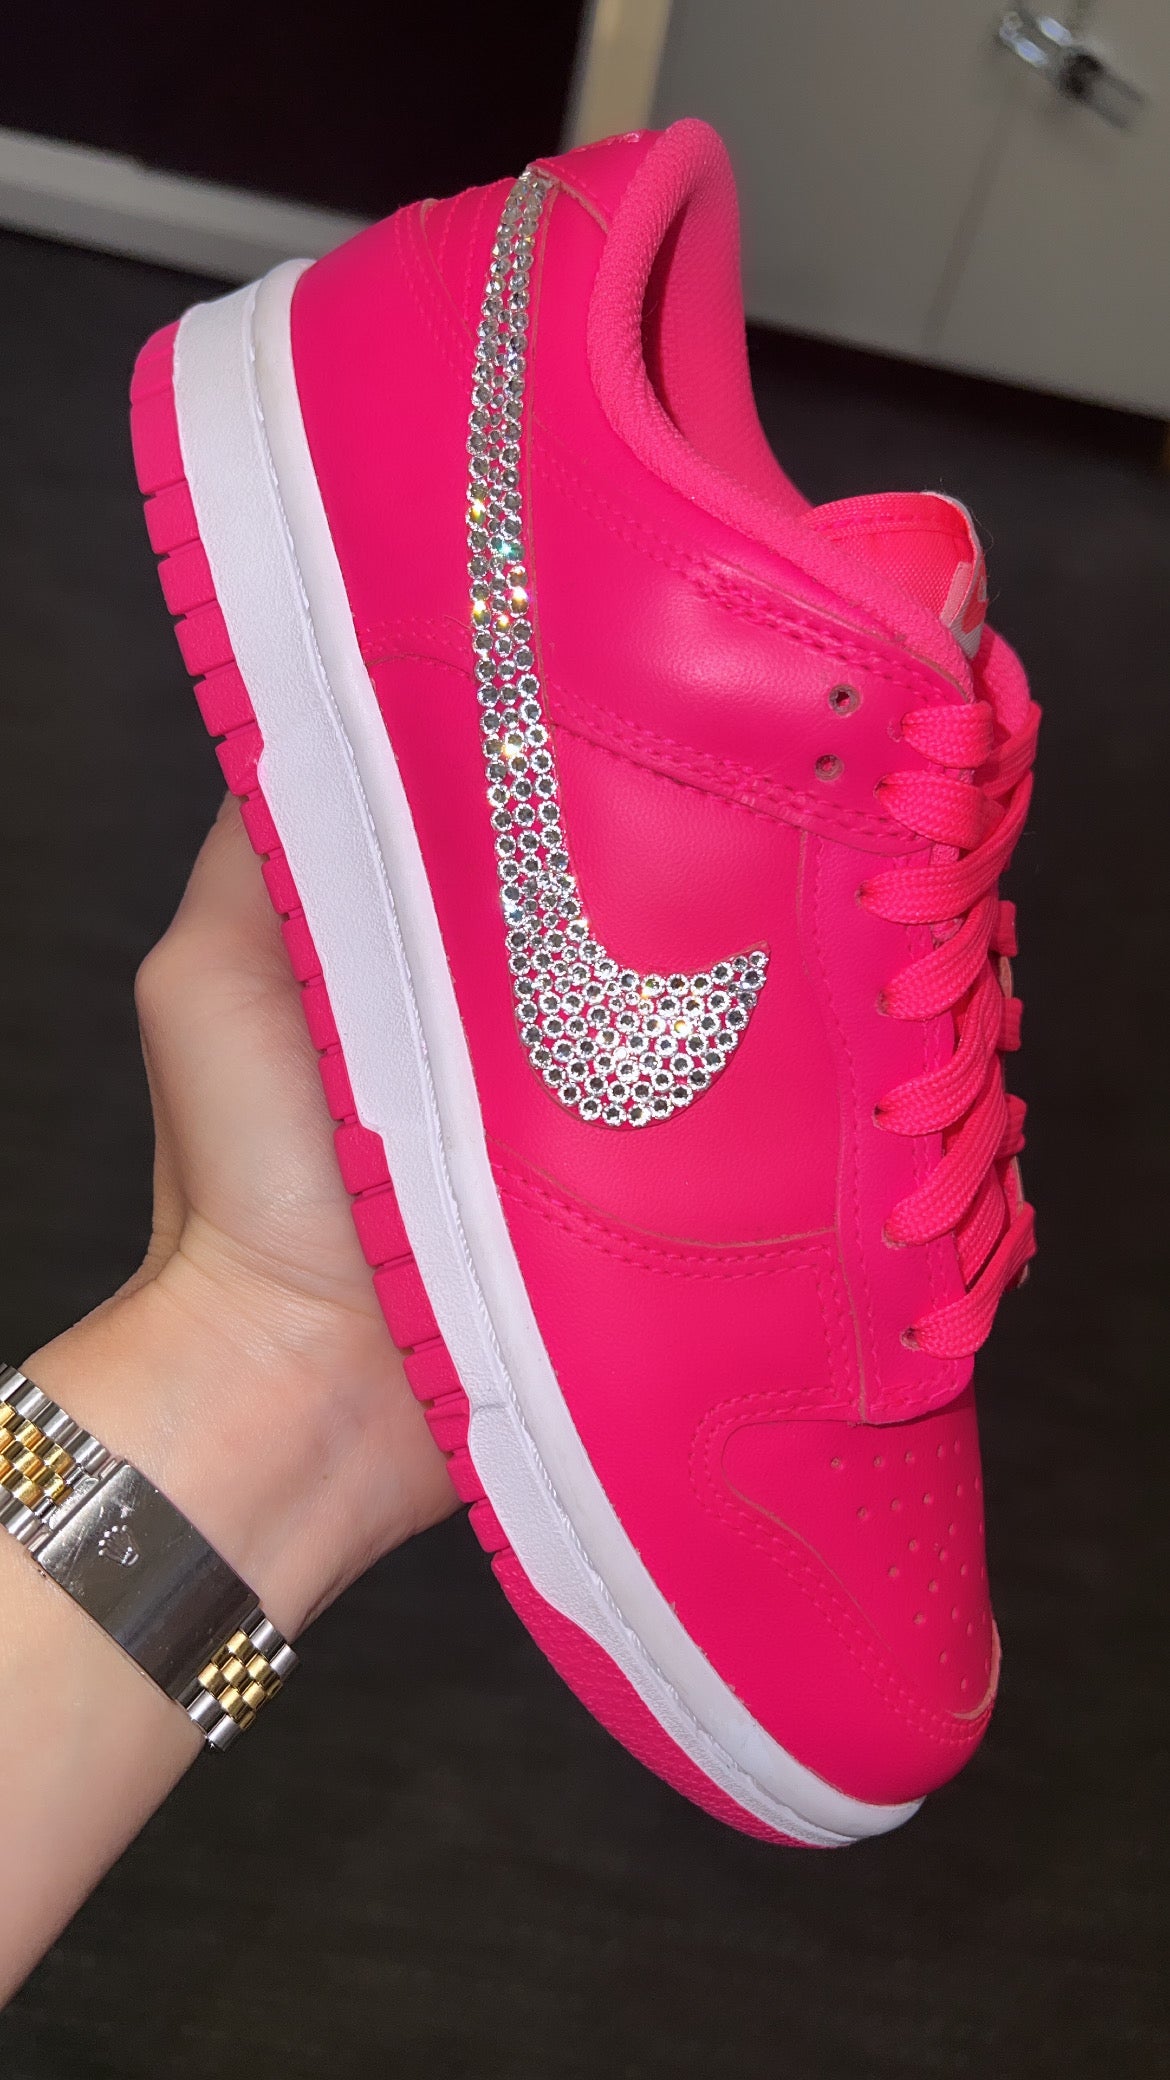 Nike Dunk Low Hyper Pink with Swarovski Crystals – Gemz & Glitz